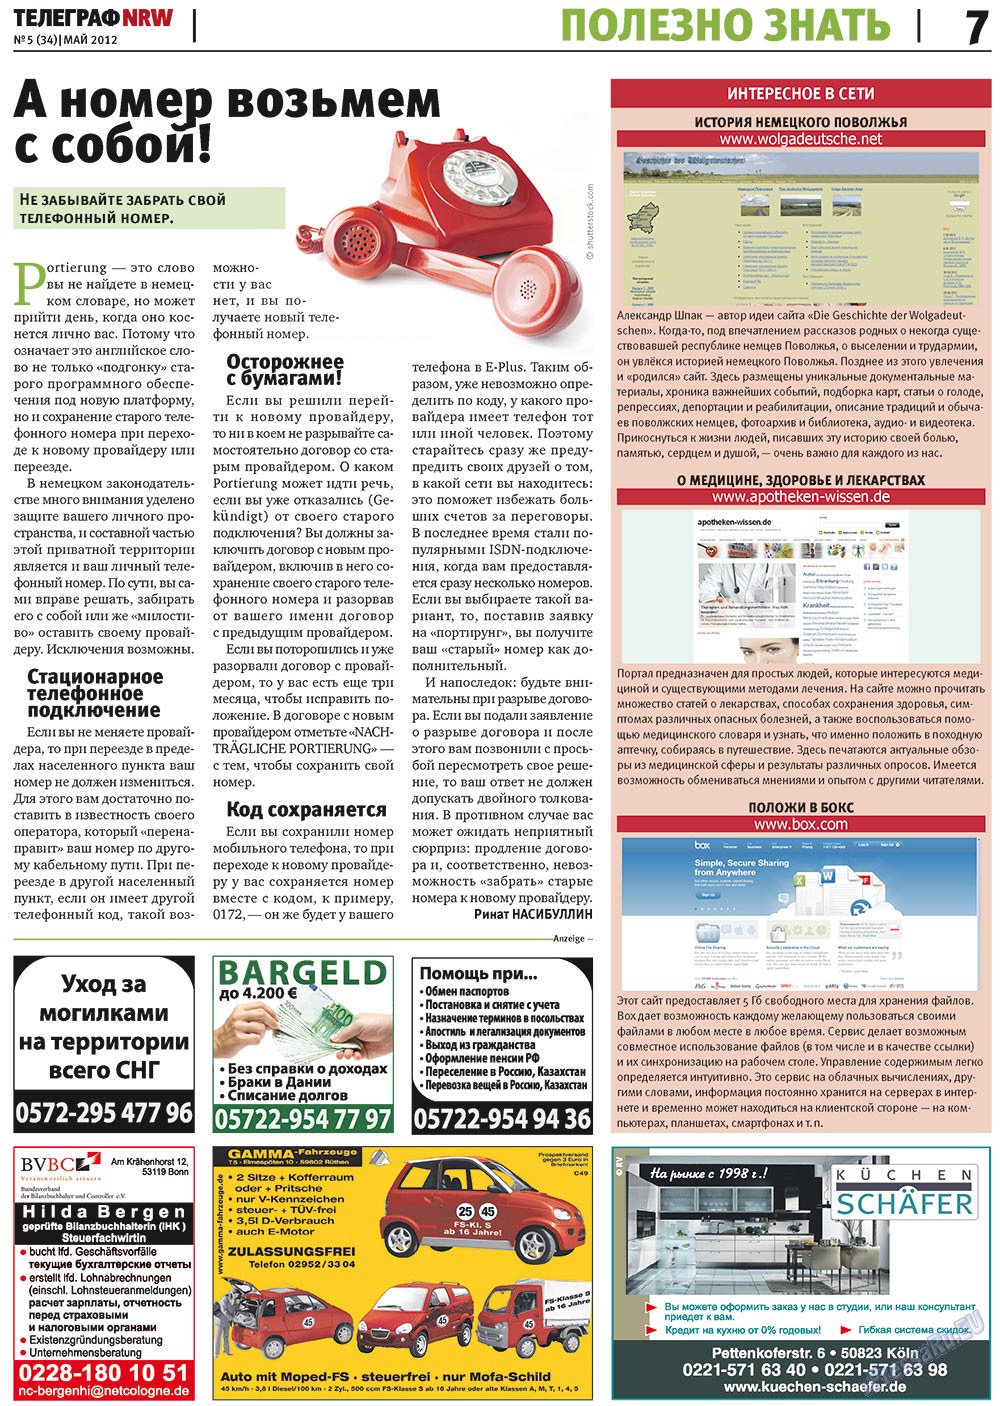 Телеграф NRW (газета). 2012 год, номер 5, стр. 7